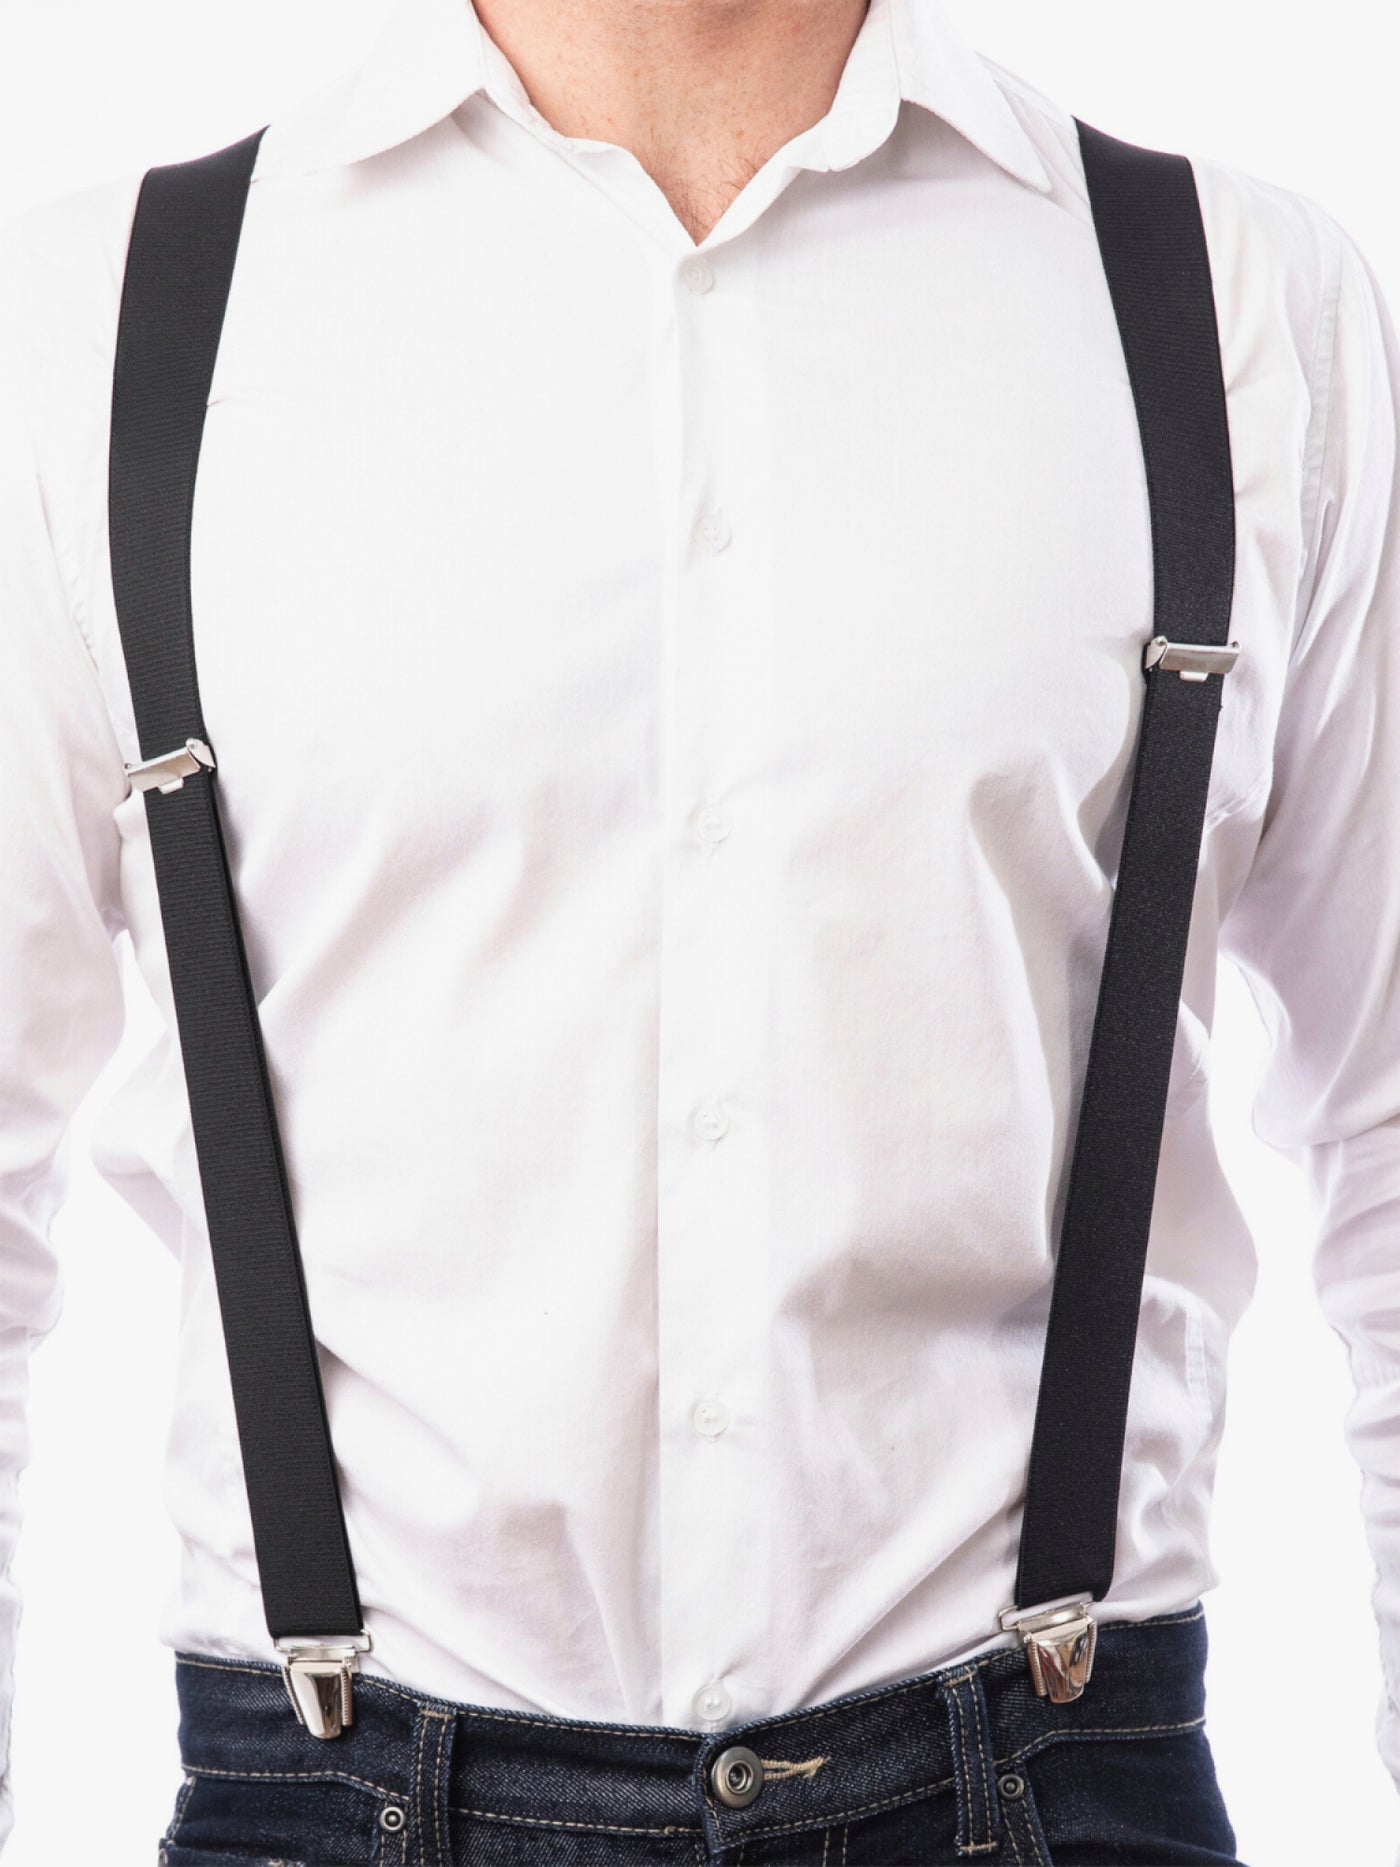 Bretelle noir pour homme sur chemise